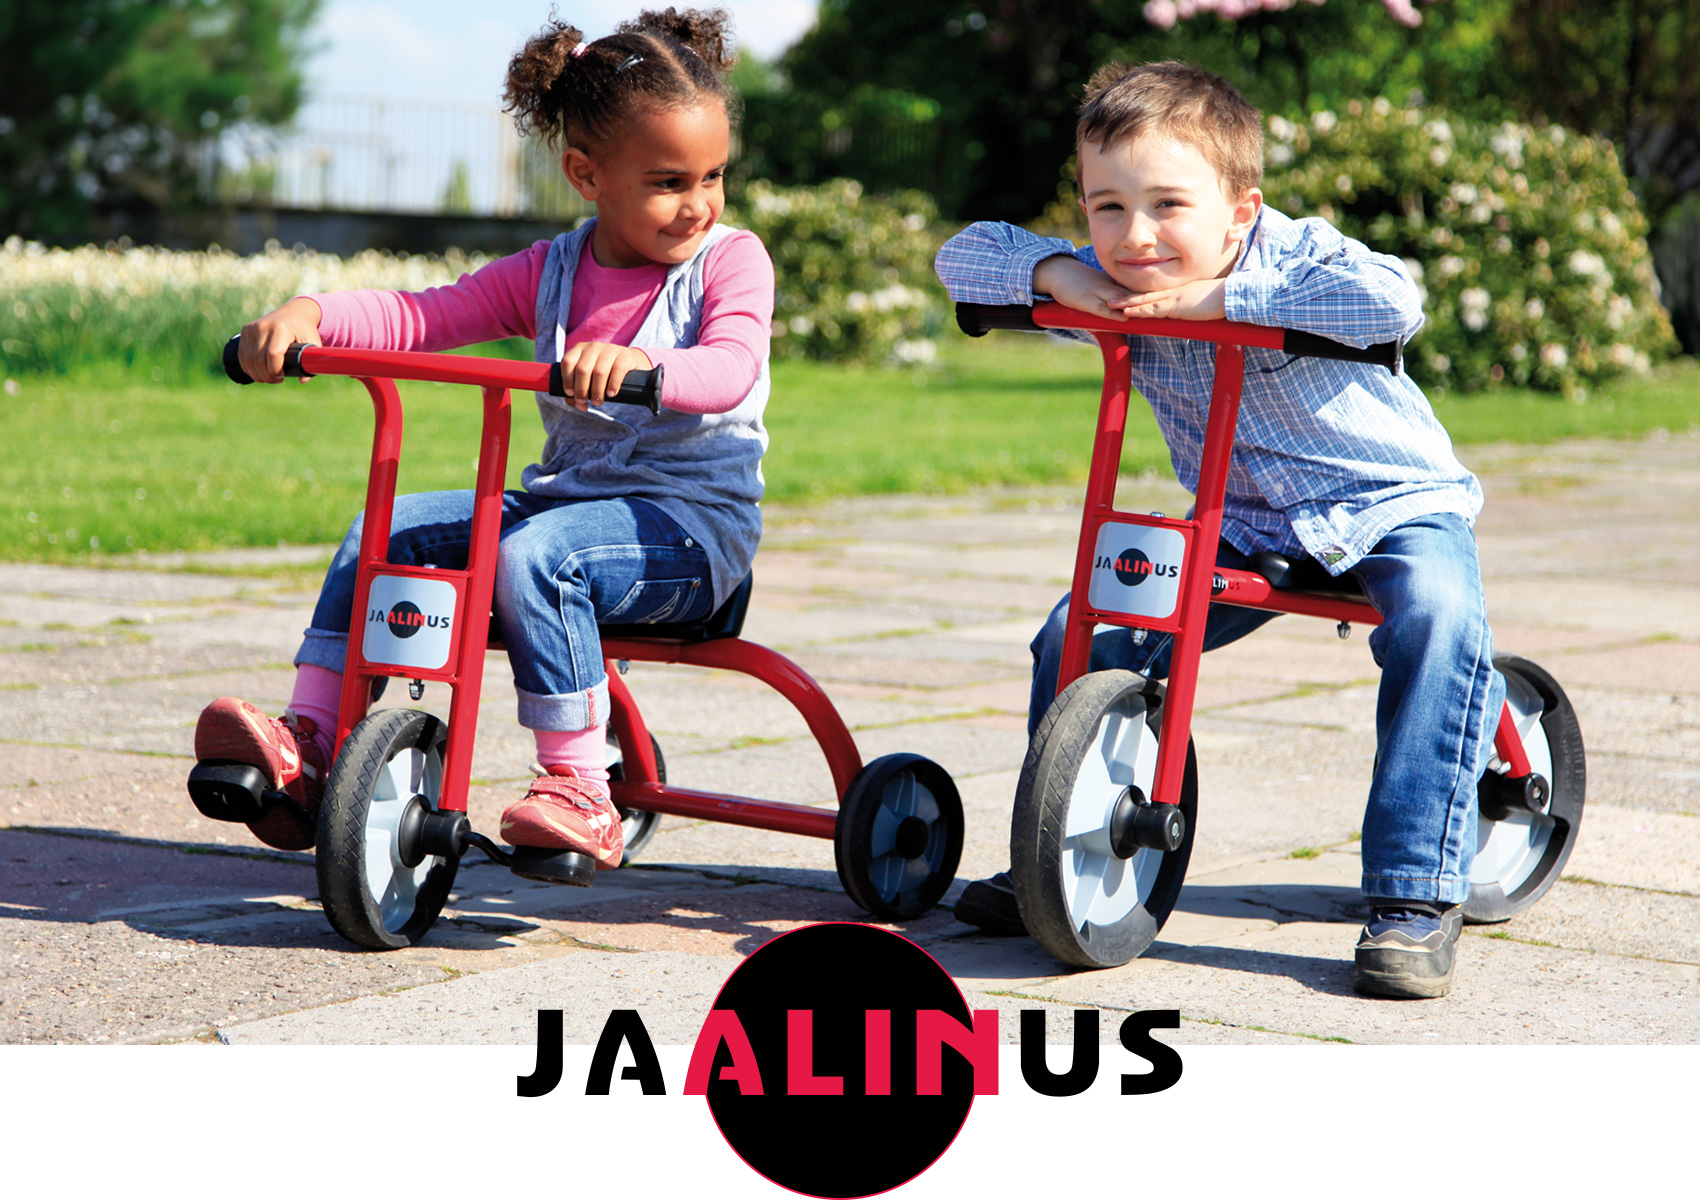 Zwei Kinder auf Dreirädern von Jaalinus